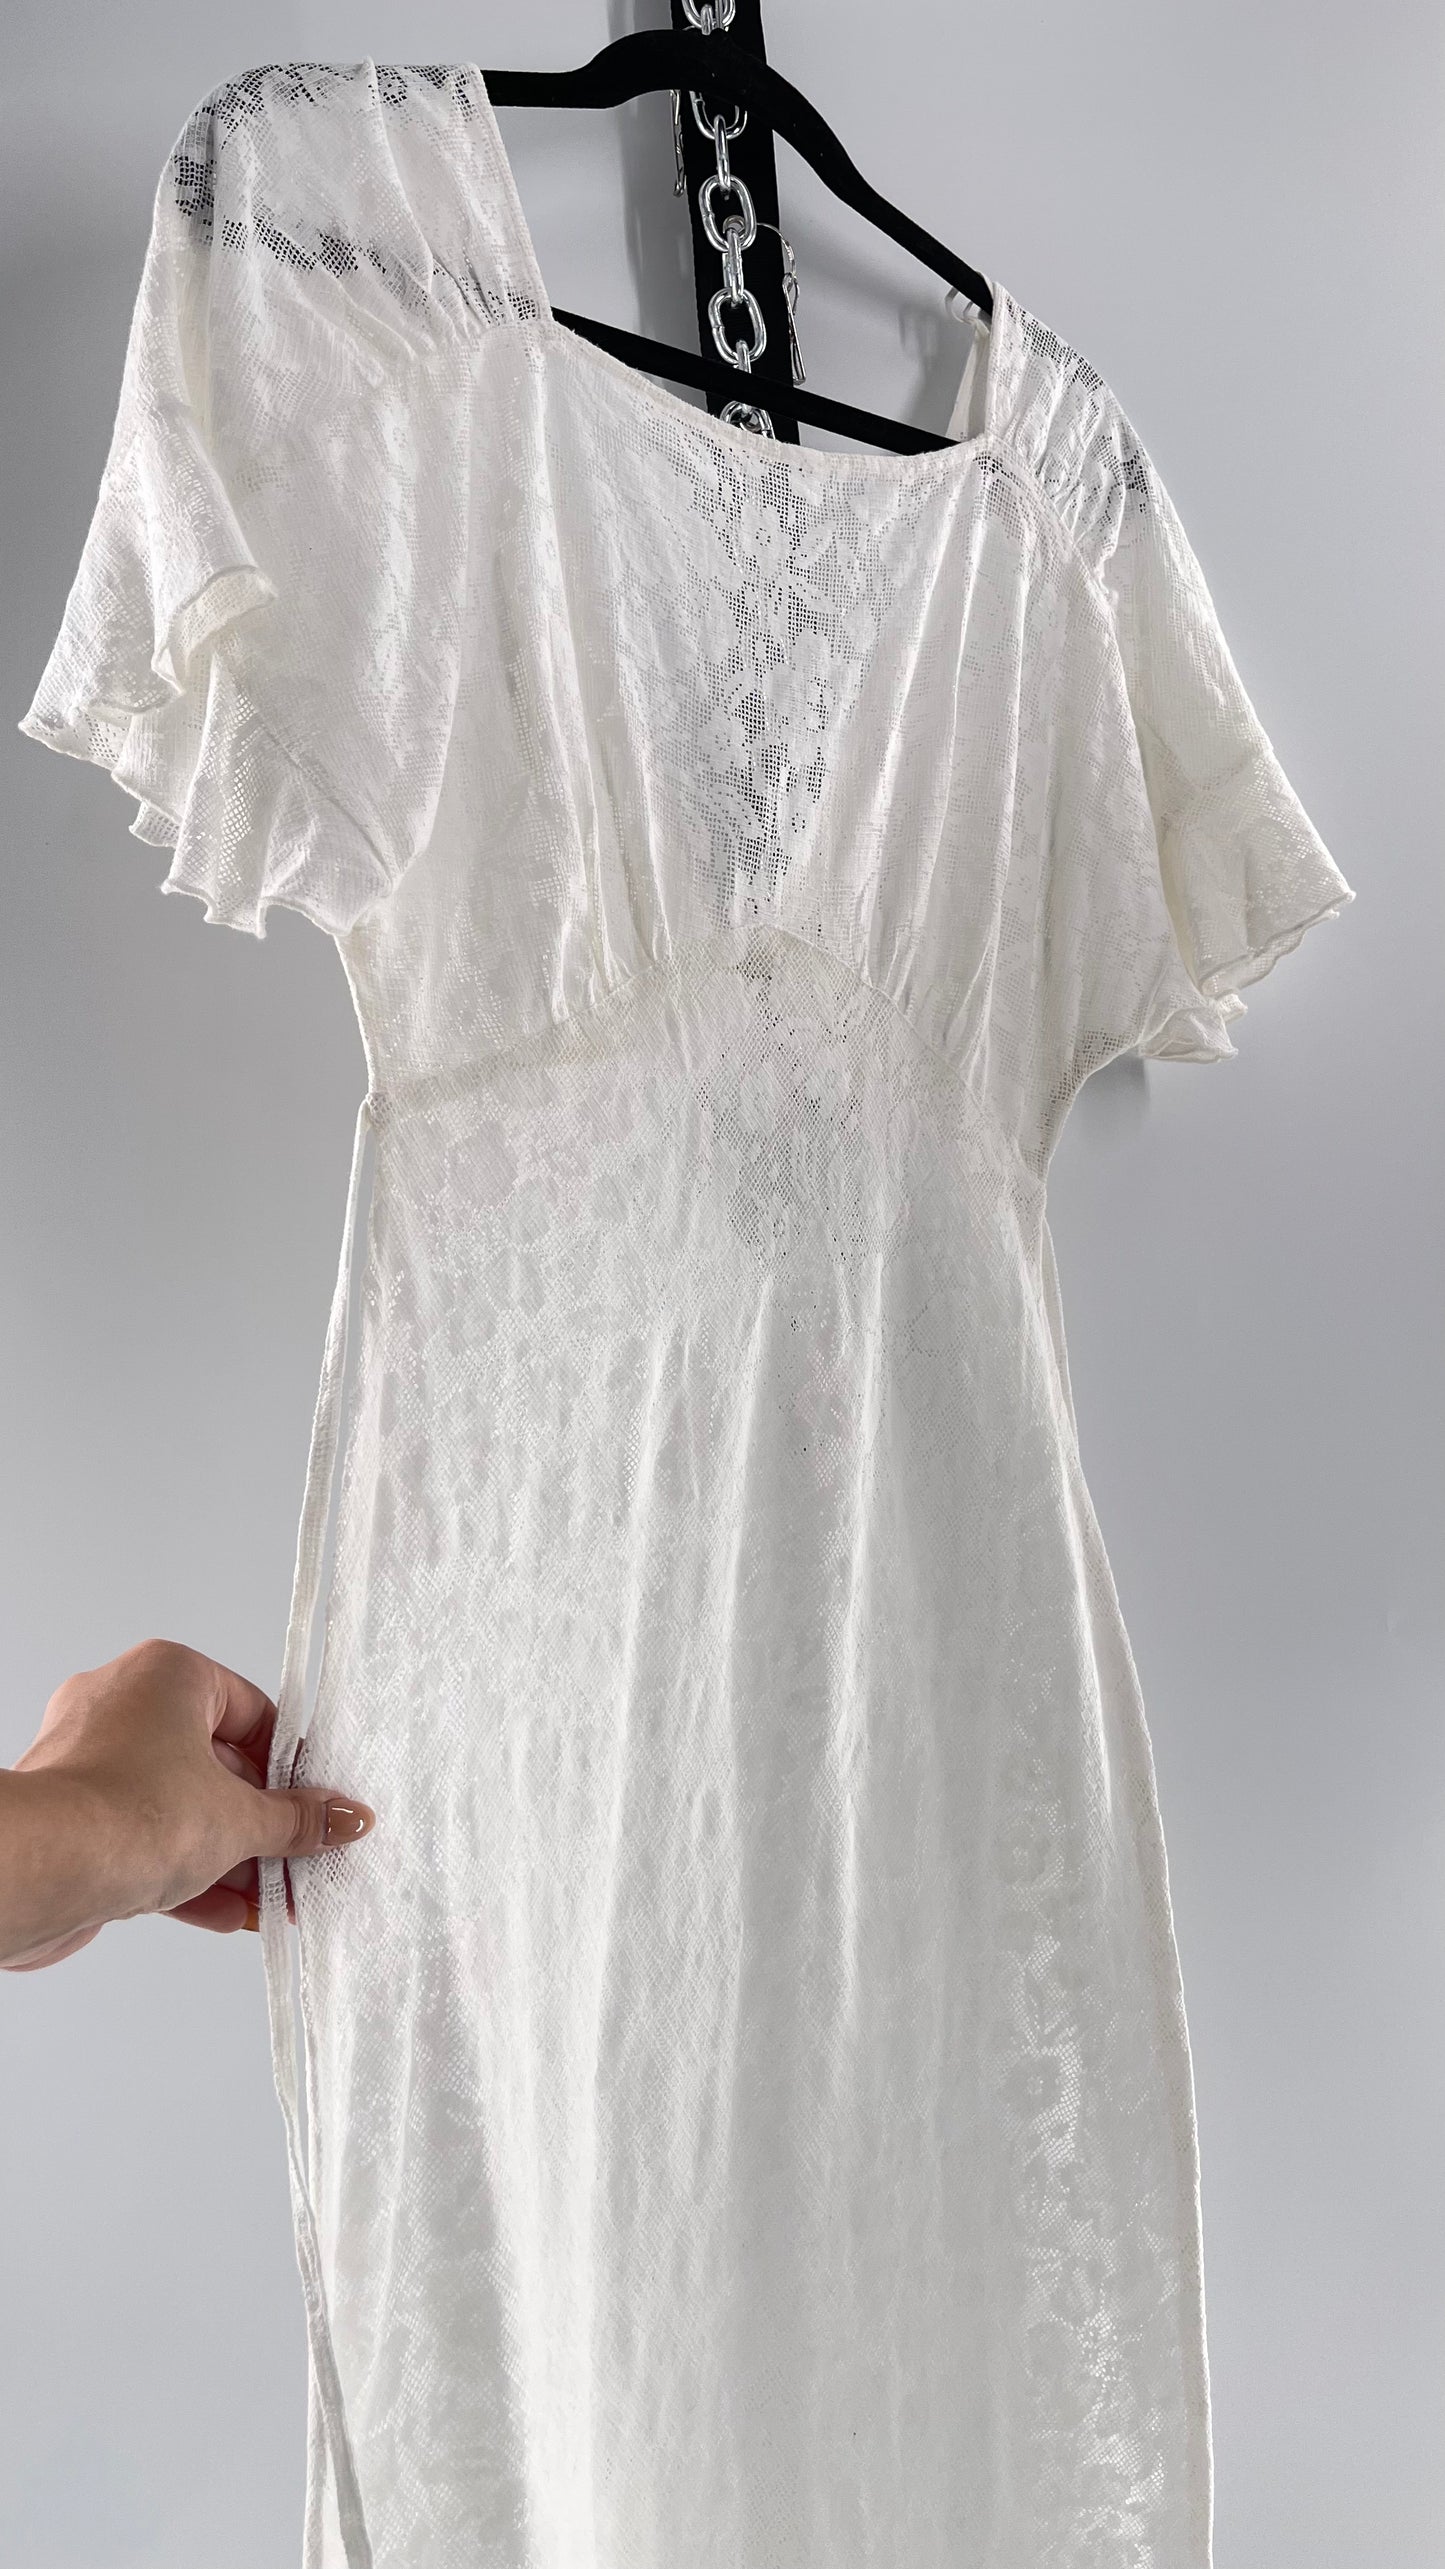 Free People White Lace Gauze Dress (XS)